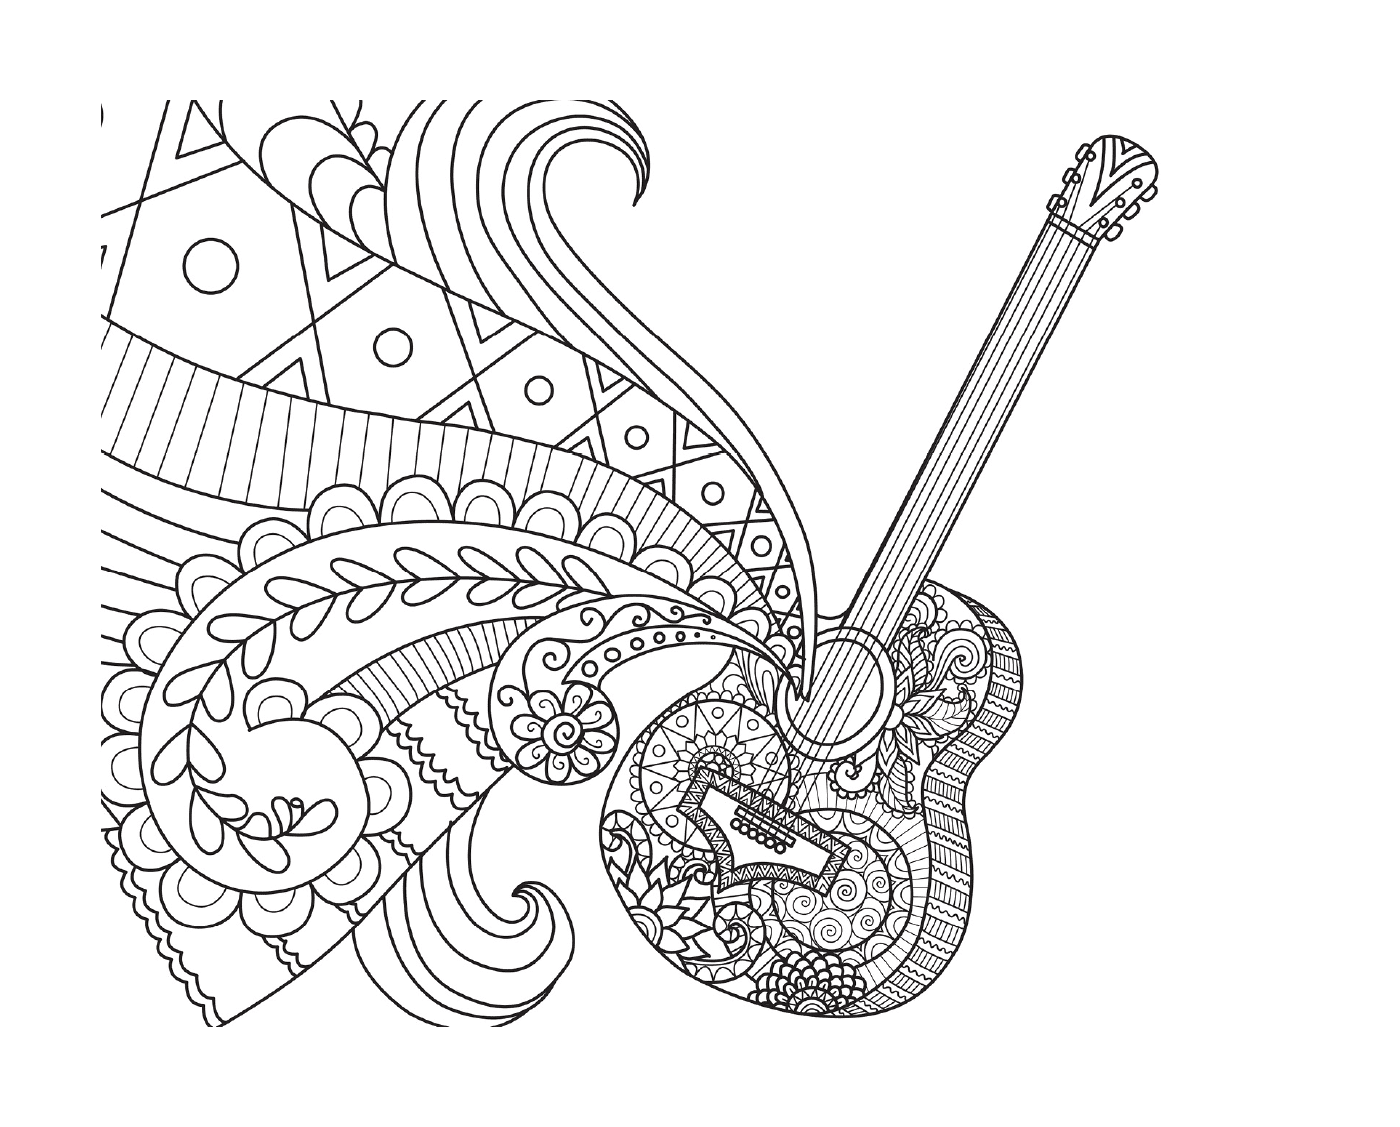  Coco Guitar by Bimbimkha 